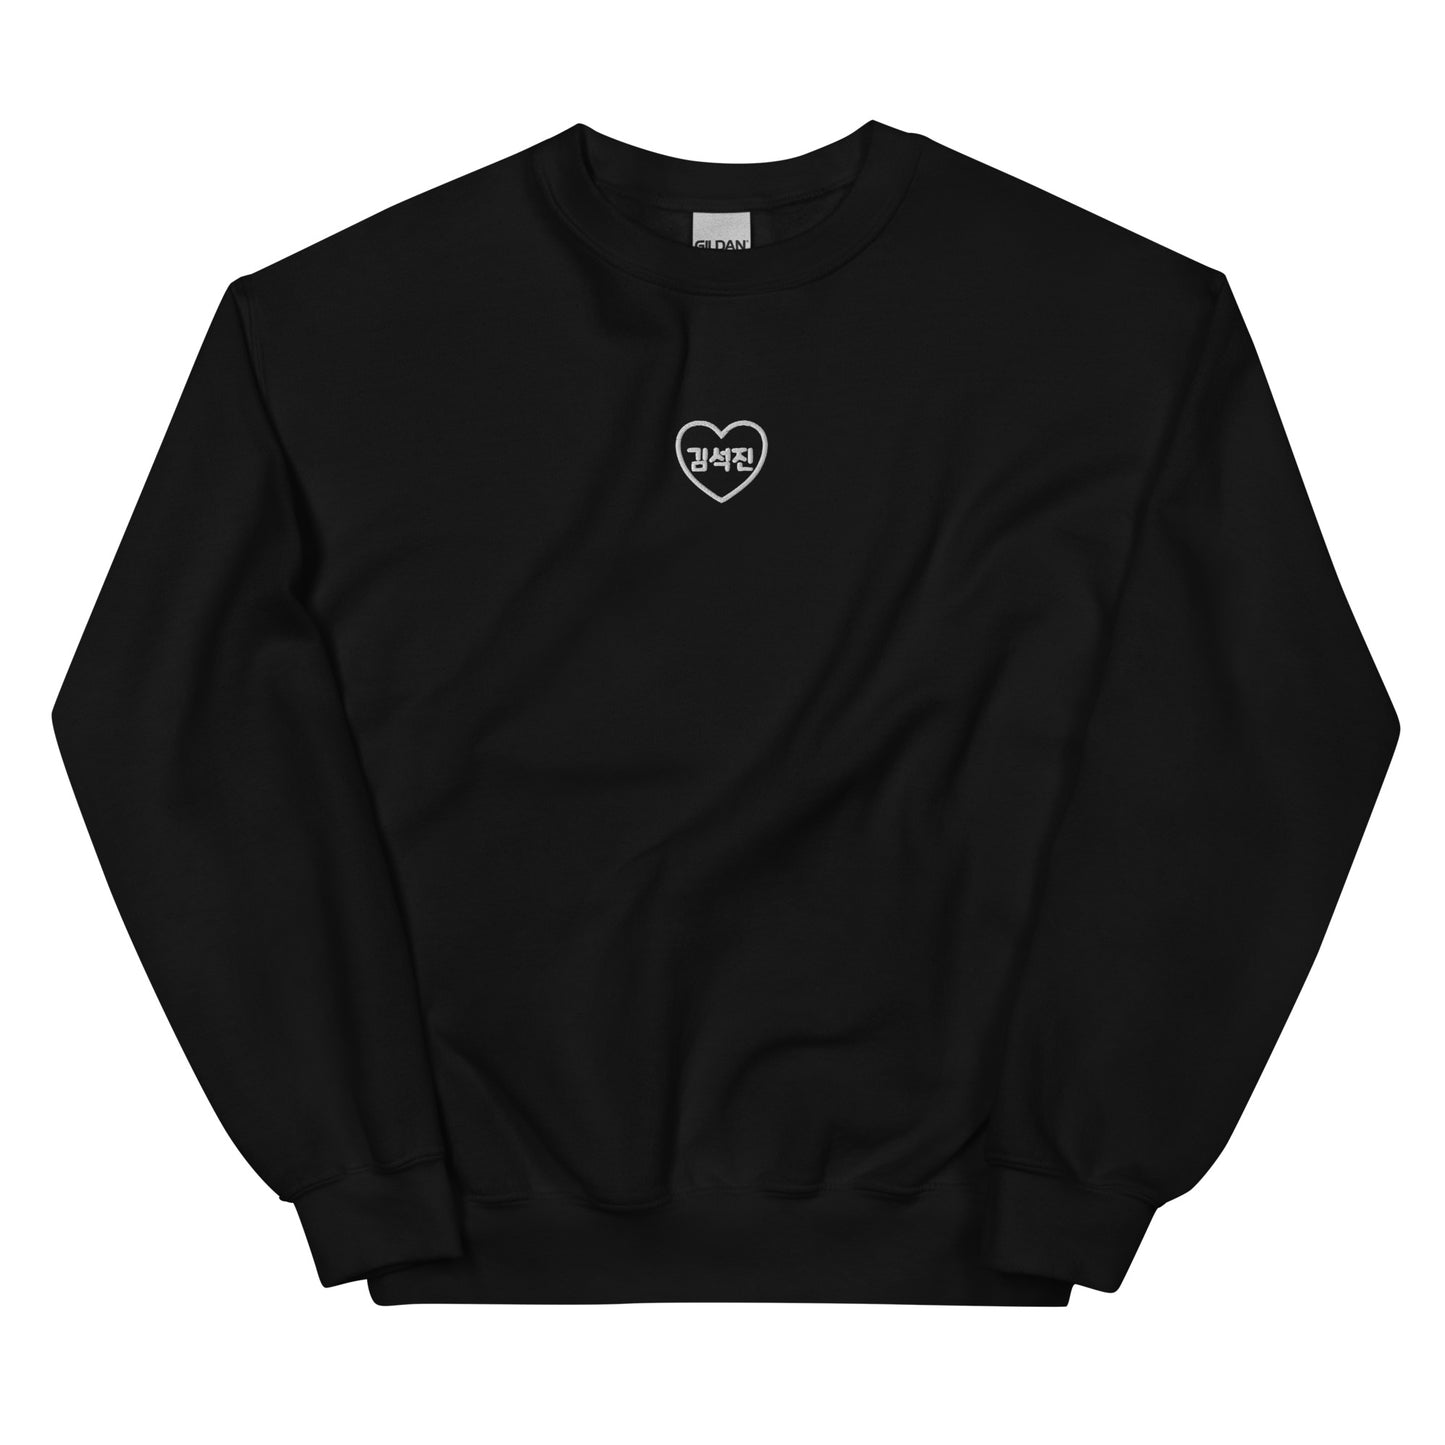 BTS Jin, Kim Seok-jin in Korean Heart Embroidery Unisex Sweatshirt